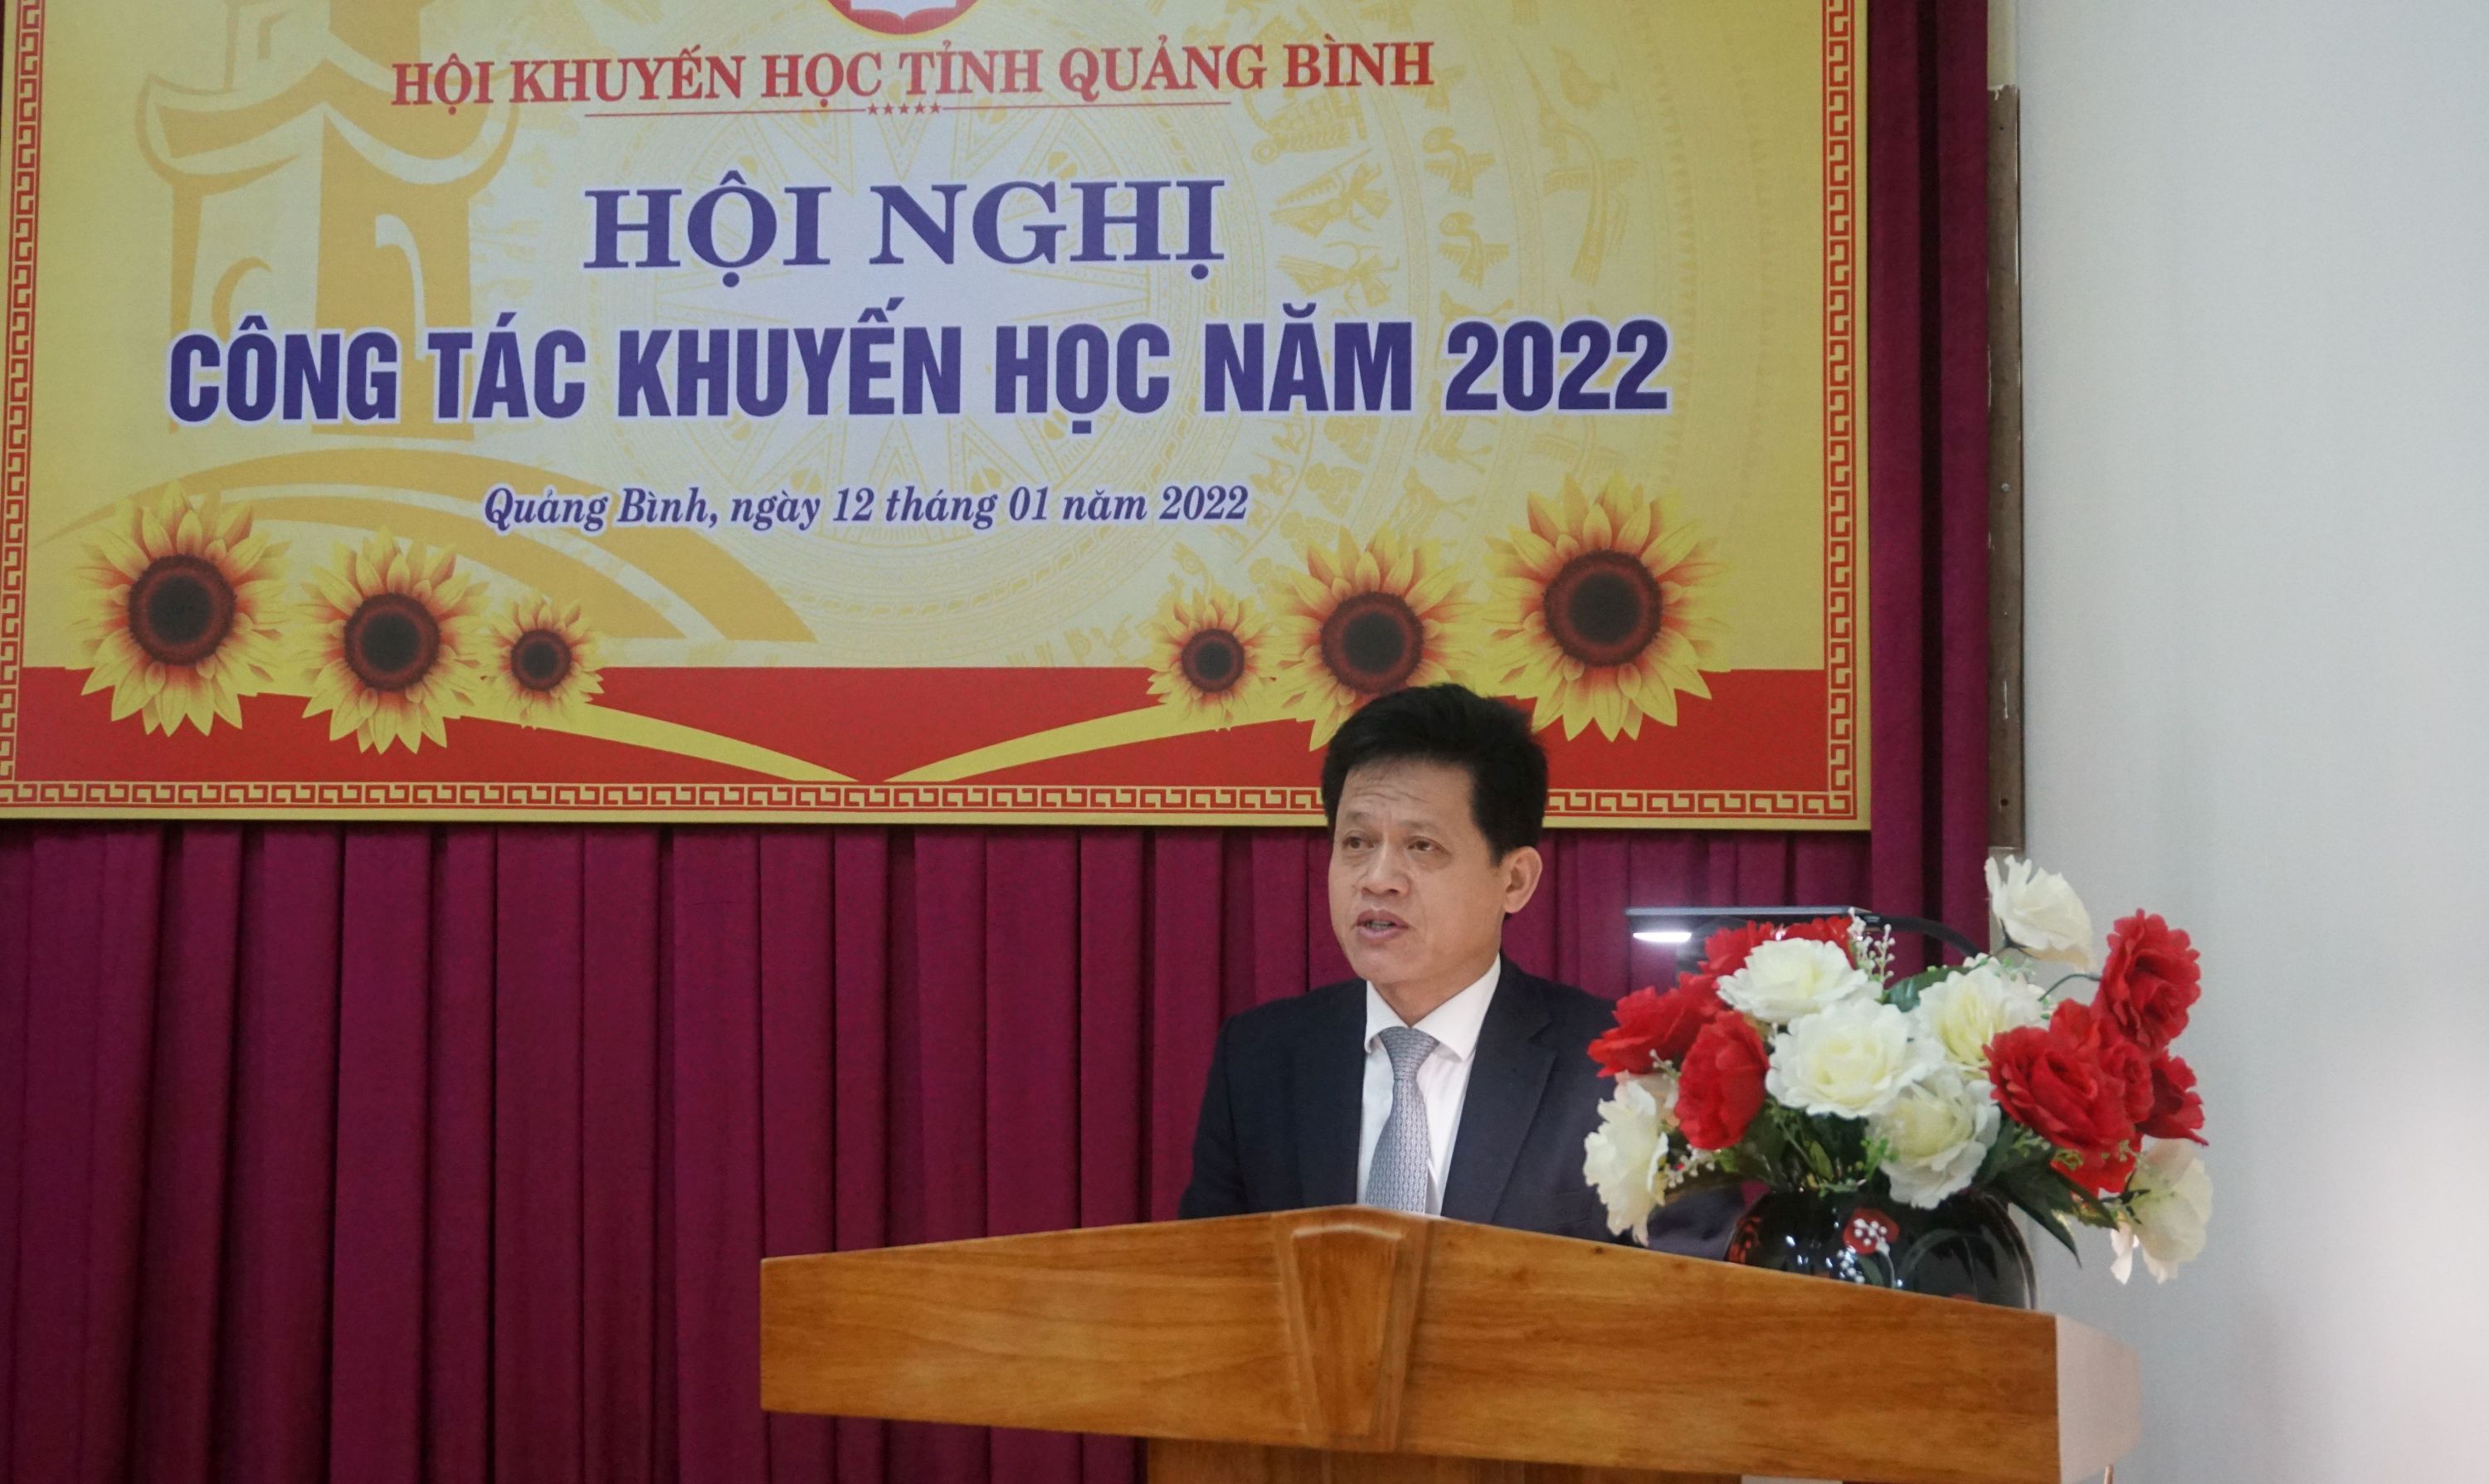 Đồng chí Lê Văn Bảo, Ủy viên Ban Thường vụ, Trưởng ban Dân vận Tỉnh ủy phát biểu chỉ đạo tại hội nghị.